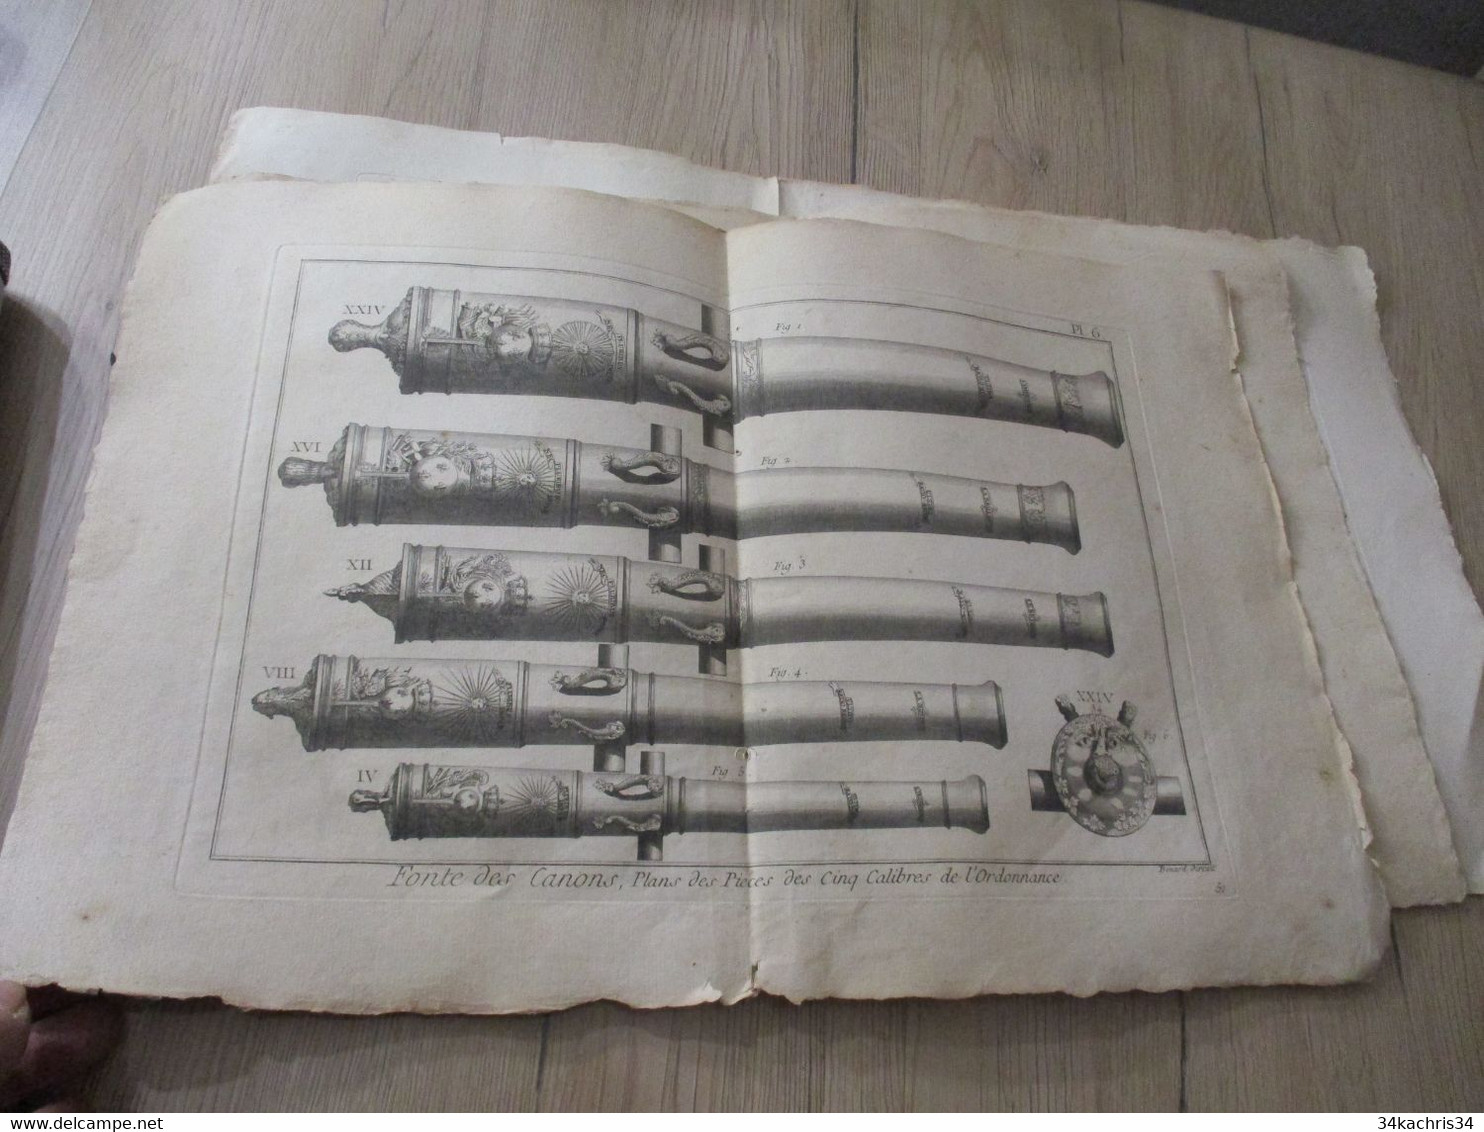 Encyclopédie Méthodique Panckoucke 24 gravures originales Fin XVIII ème fabrication des canons  dont 6 doubles